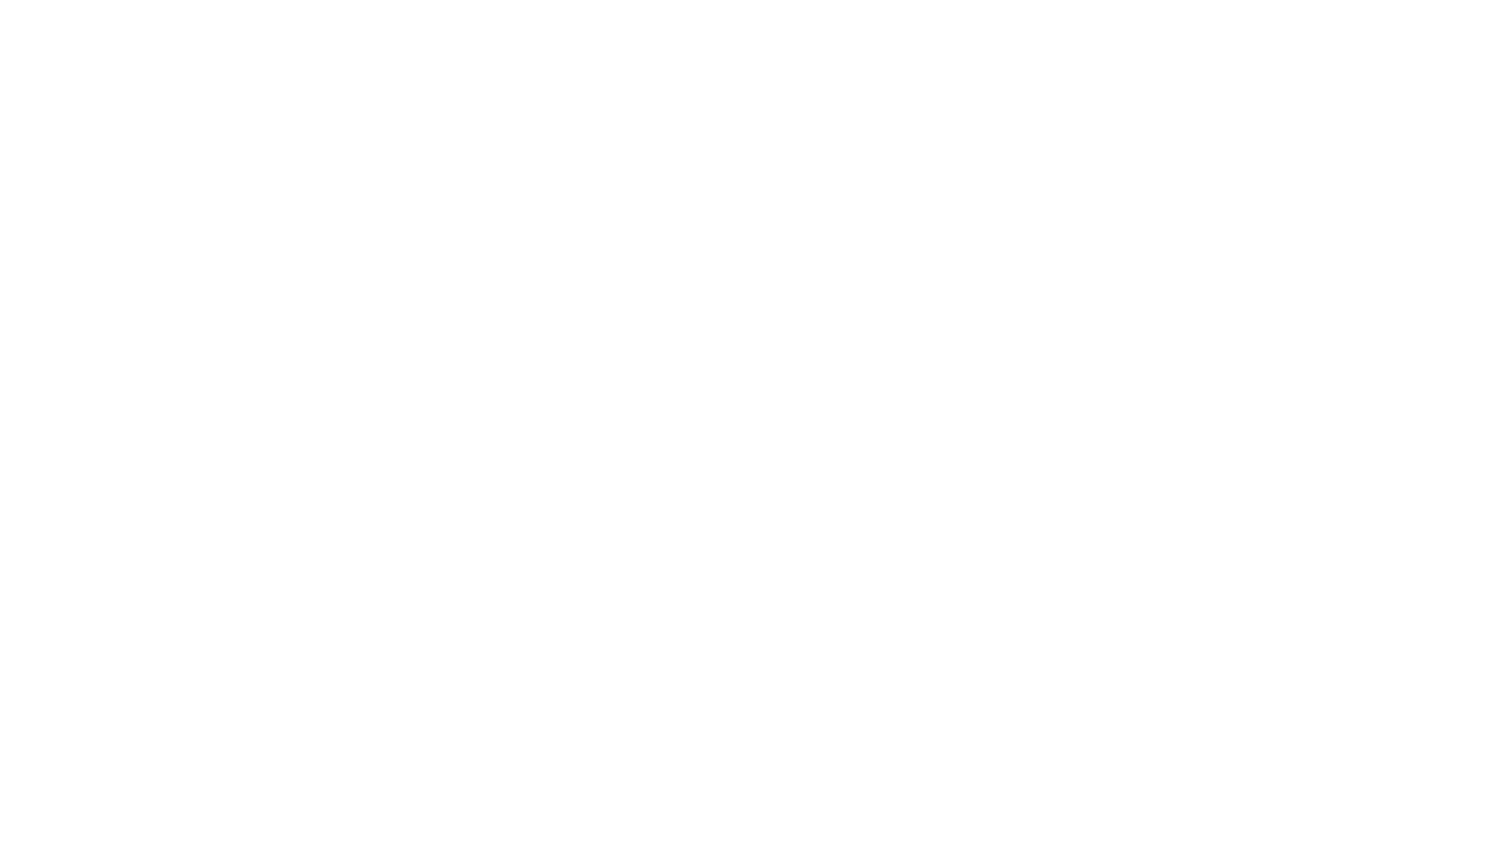 Brooks Real Estate